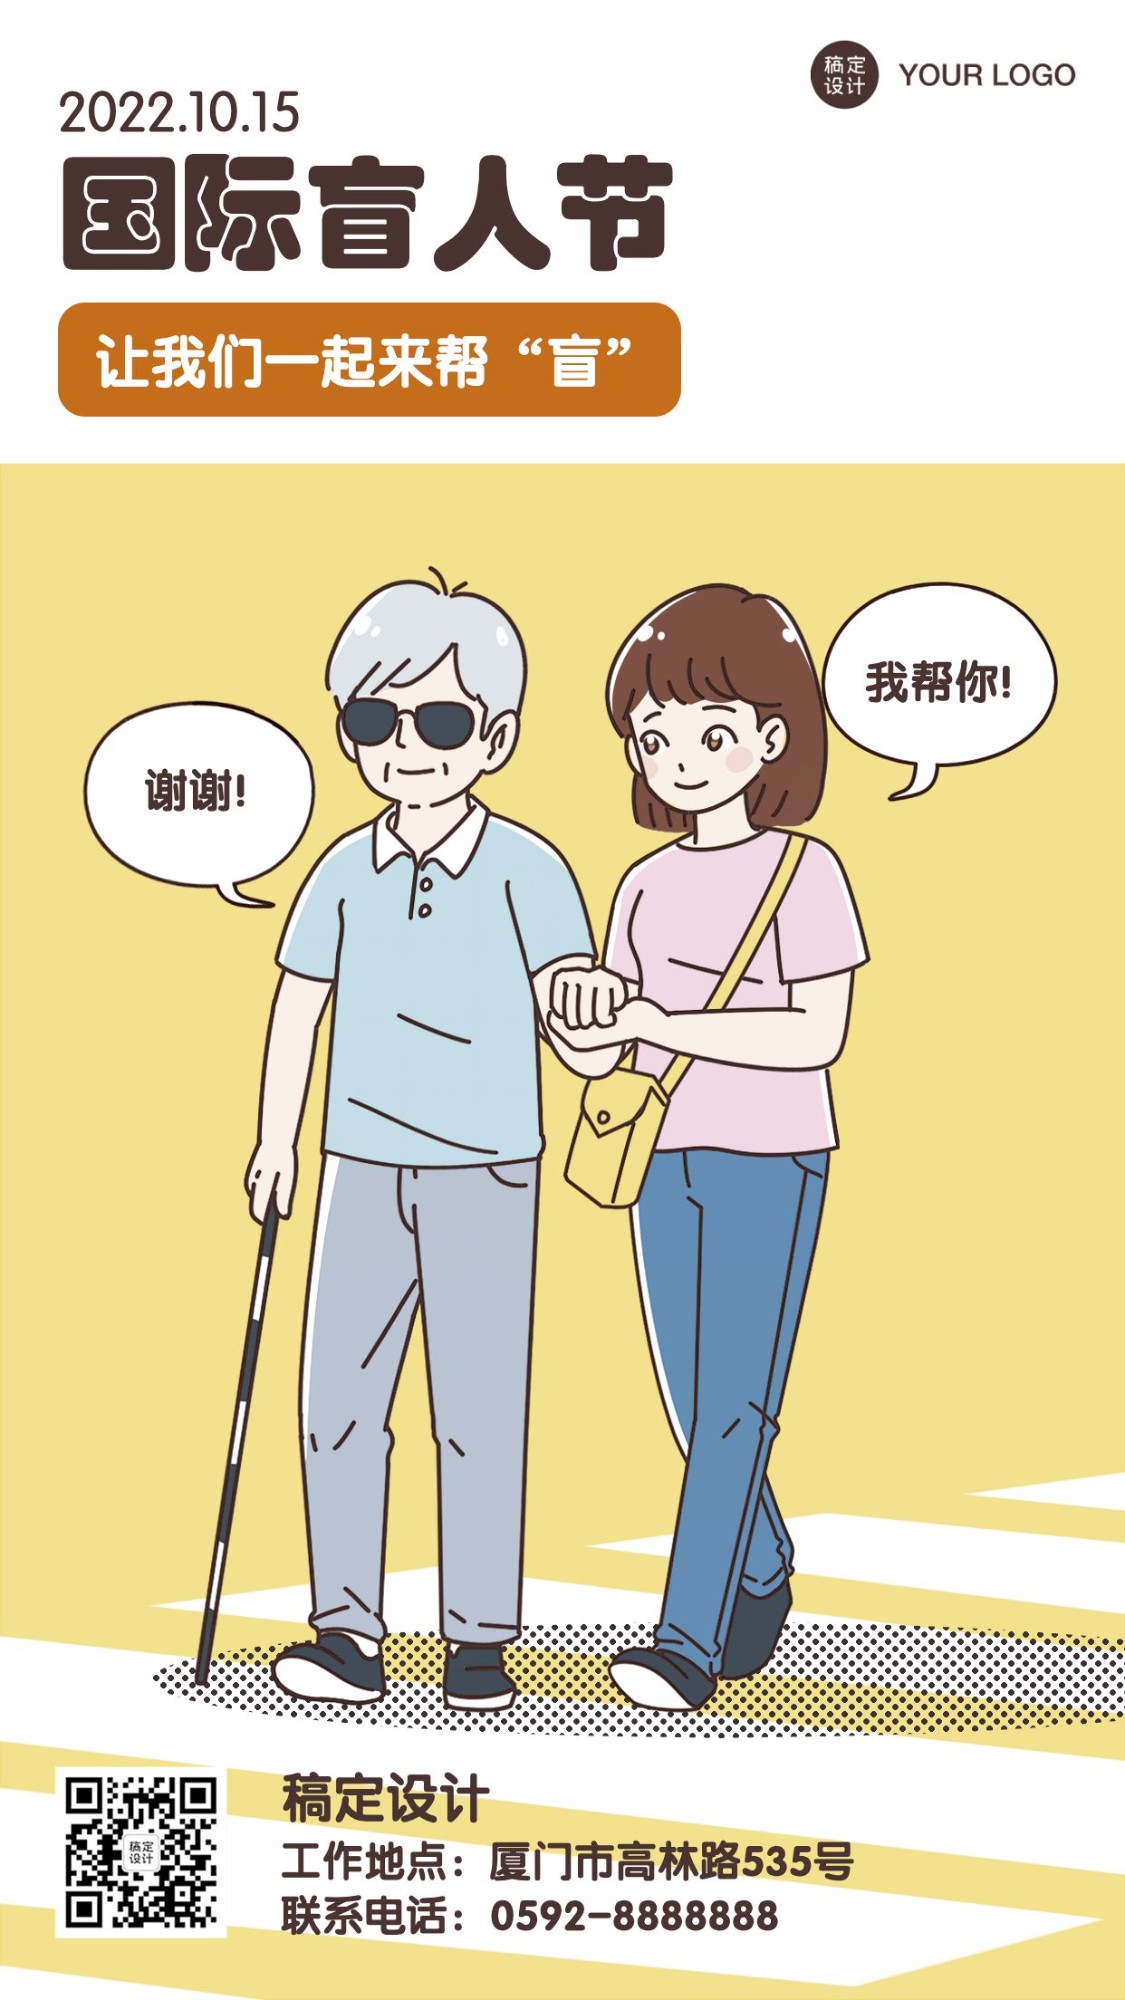 1015国际盲人节关爱盲人手机海报预览效果